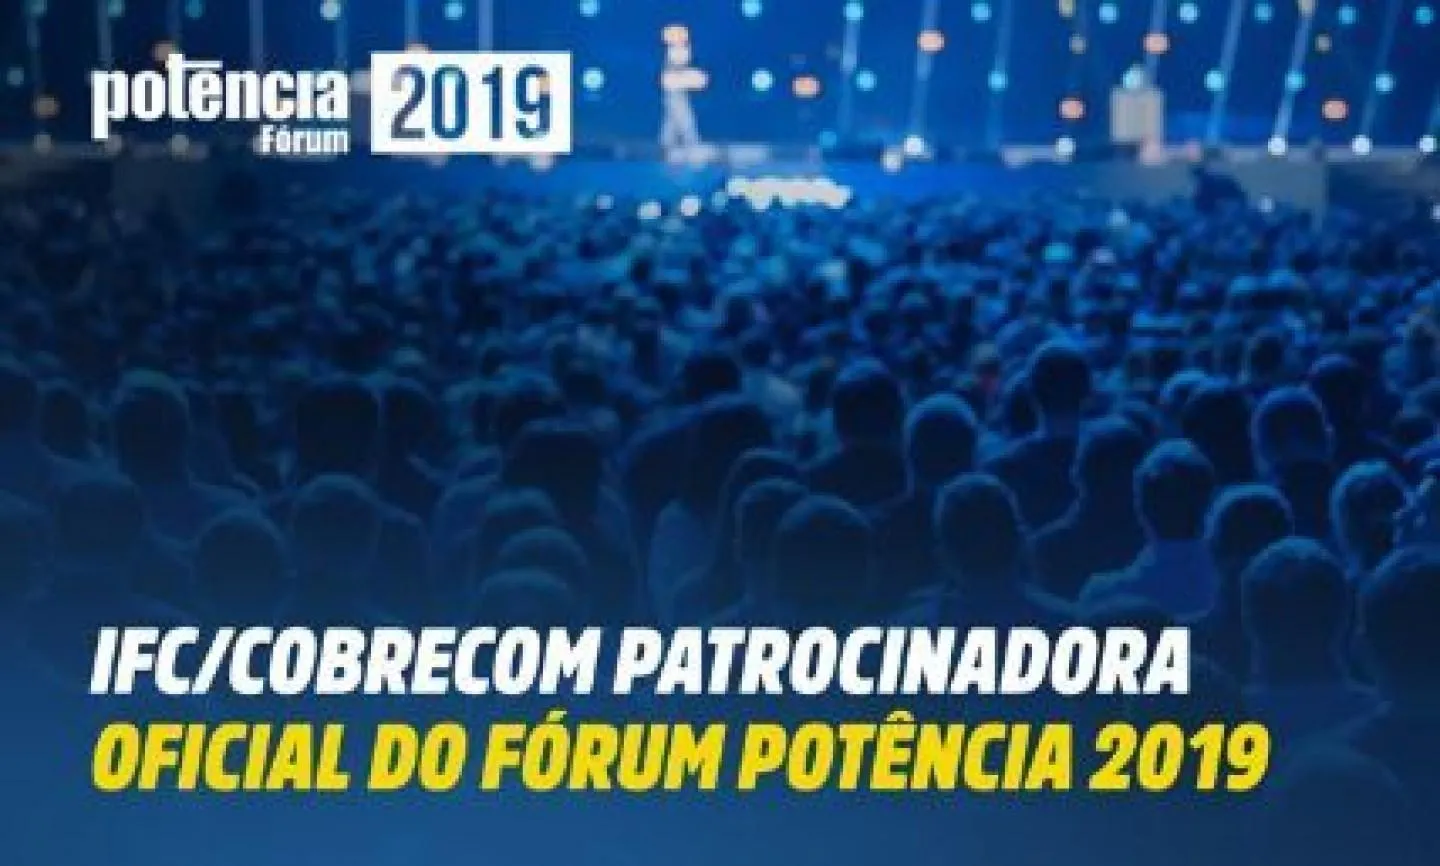 IFC/COBRECOM participará das Etapas do Fórum Potência 2019 | Cobrecom